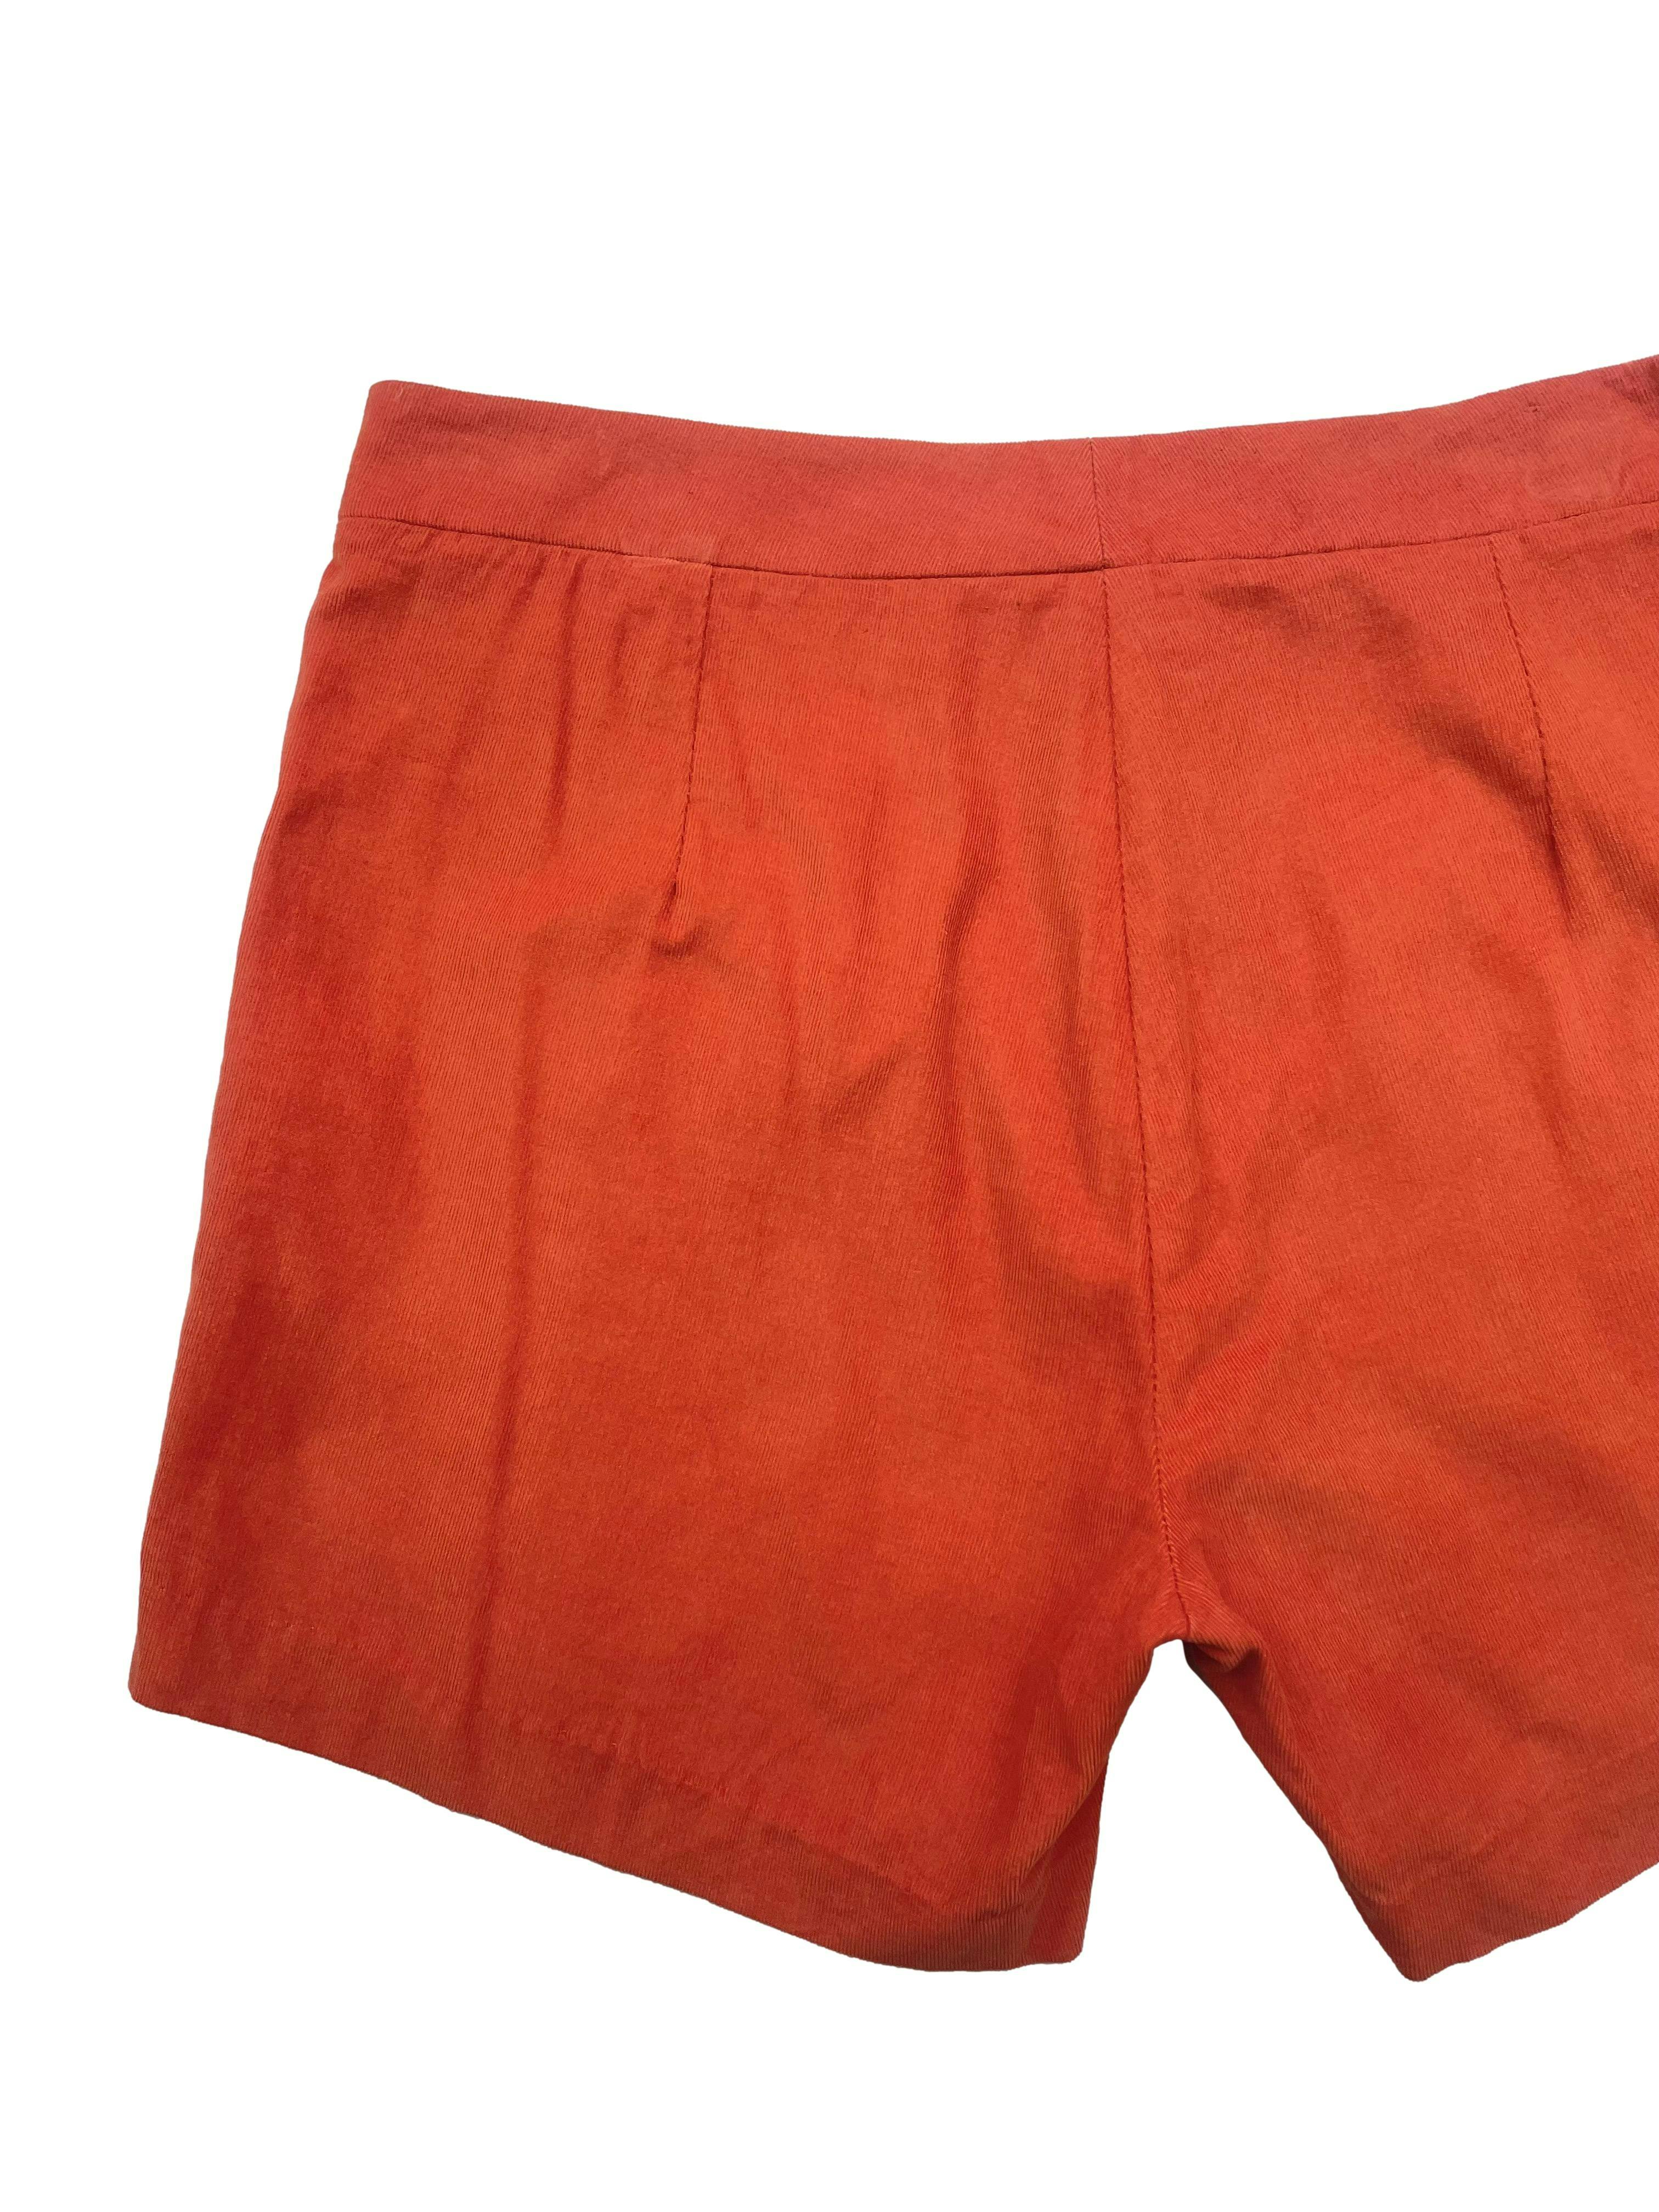 Short naranja Essentiel de corduroy delgado con aberturas laterales, cierre y corchete.  Cintura 78cm, Largo 33cm.